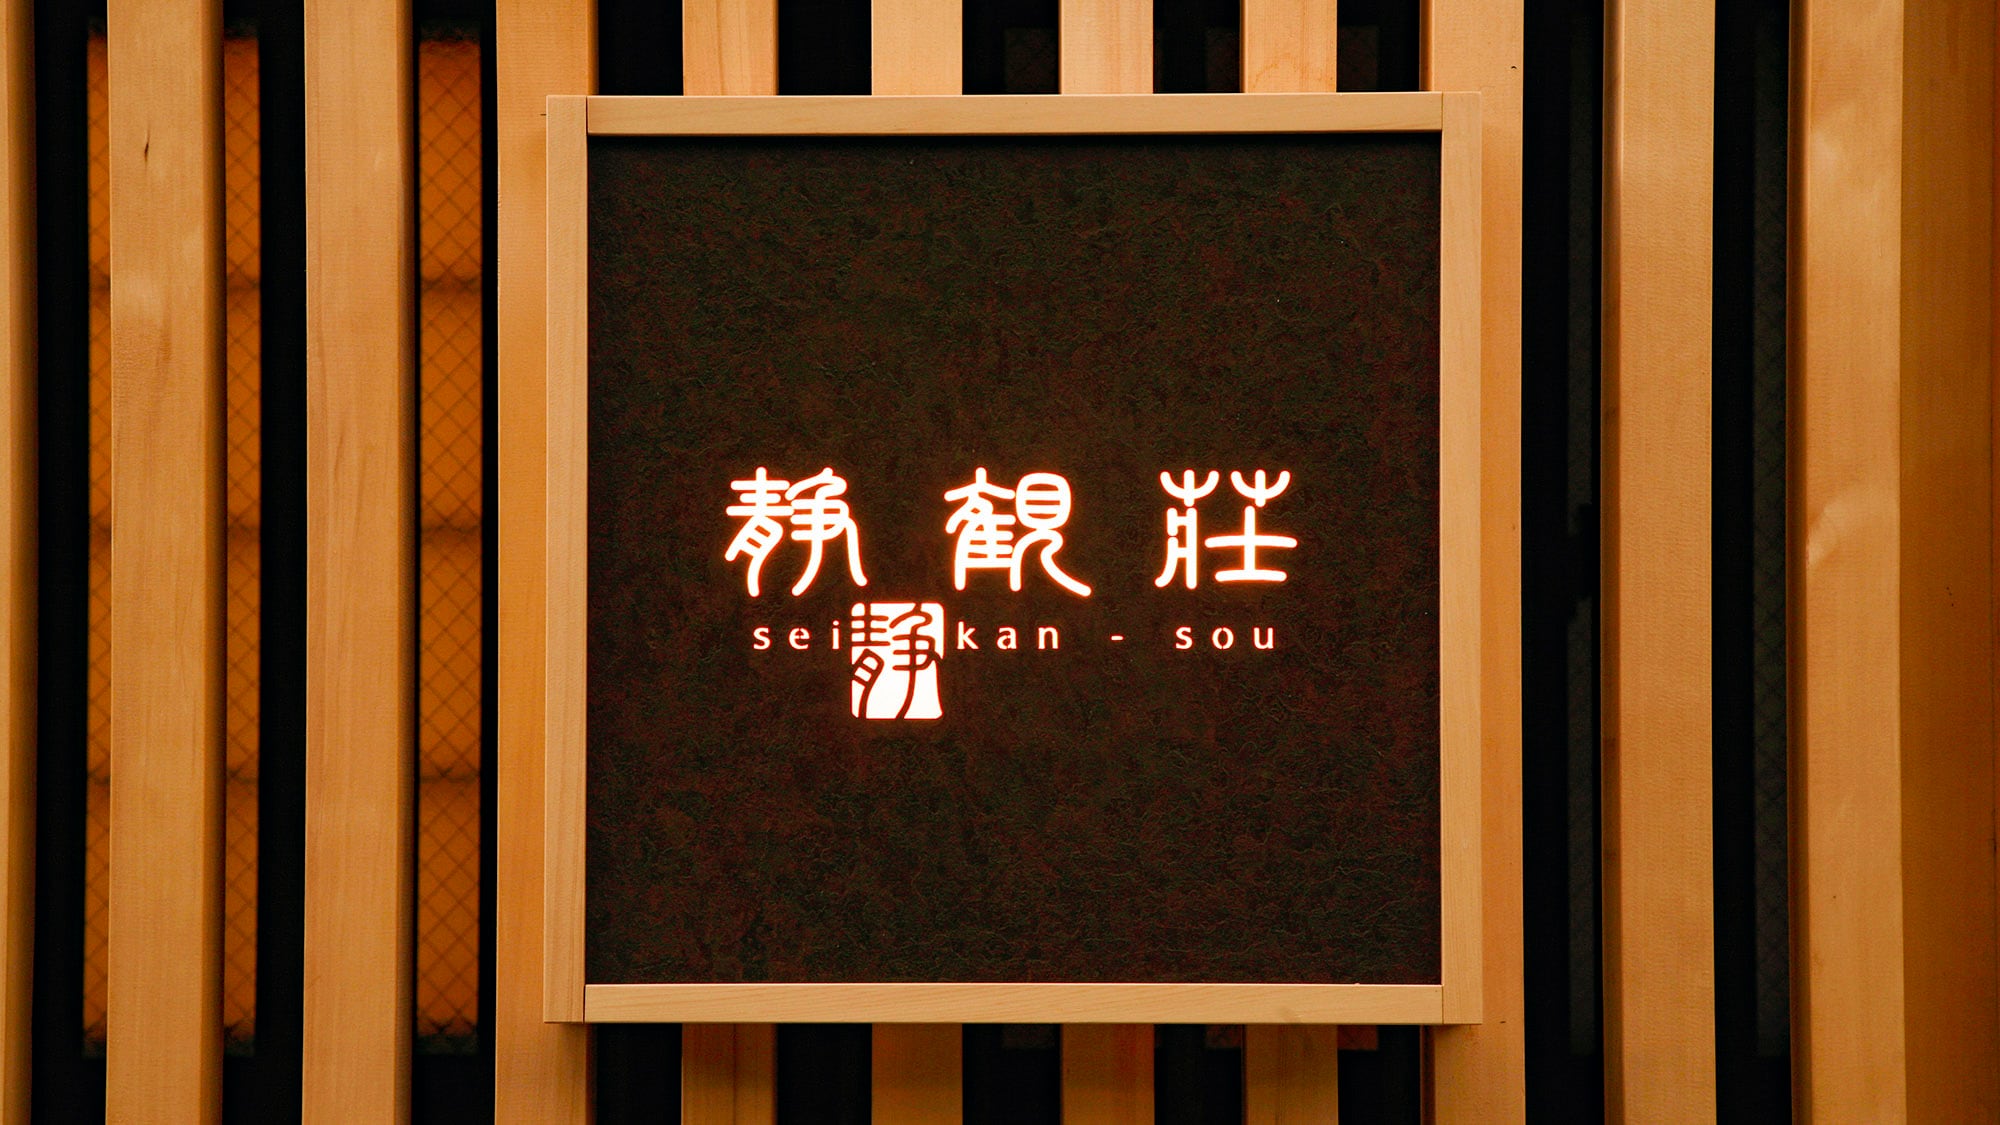 ・Signboard of "Hakone Yumoto Onsen Seikanso" lit up